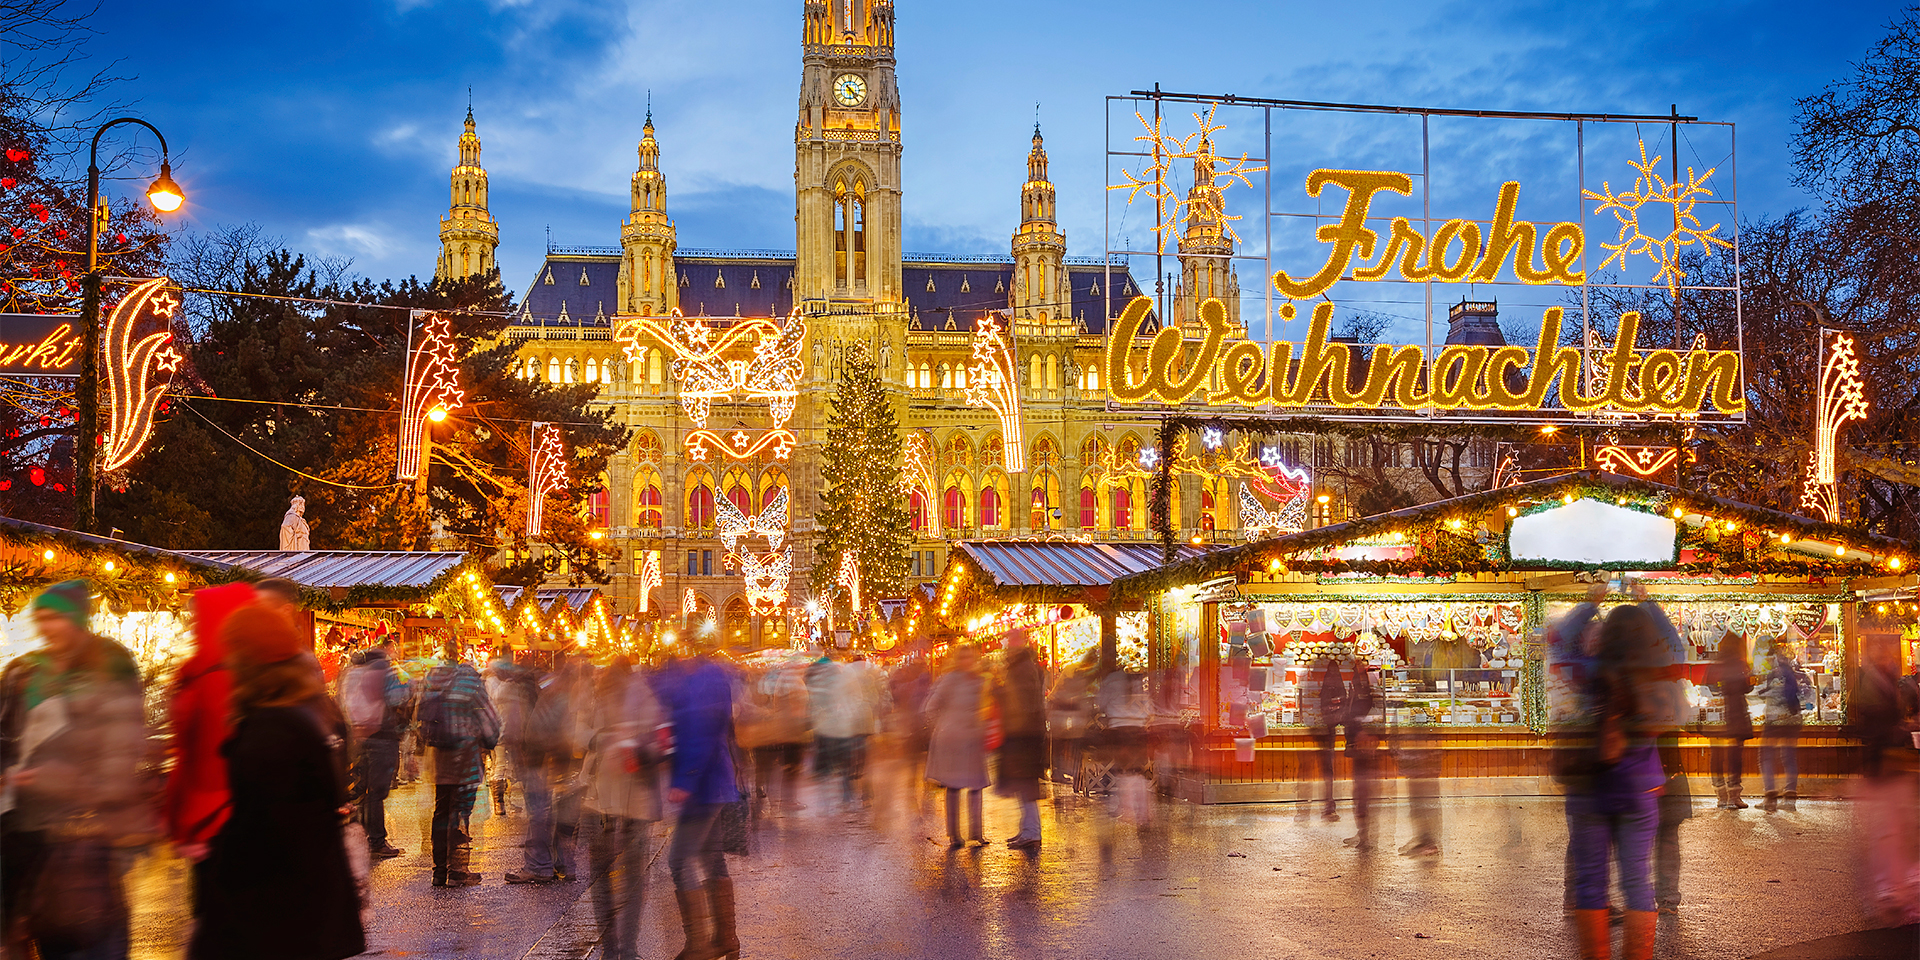 Europe's Best Christmas Markets- Vienna, Austria